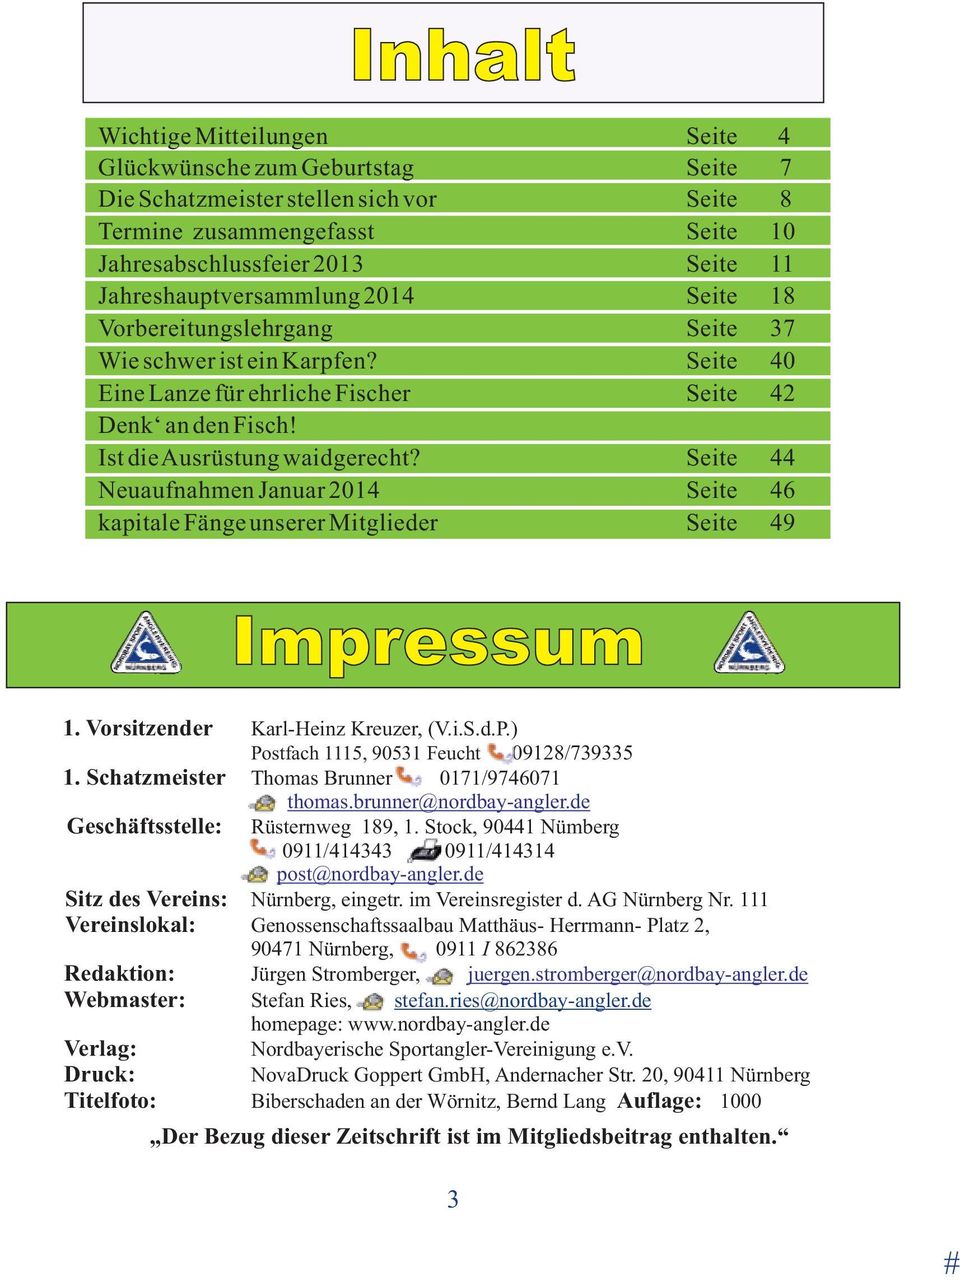 Seite 44 Neuaufnahmen Januar 2014 Seite 46 kapitale Fänge unserer Mitglieder Seite 49 Impressum 1. Vorsitzender Karl-Heinz Kreuzer, (V.i.S.d.P.) Postfach 1115, 90531 Feucht 09128/739335 1.